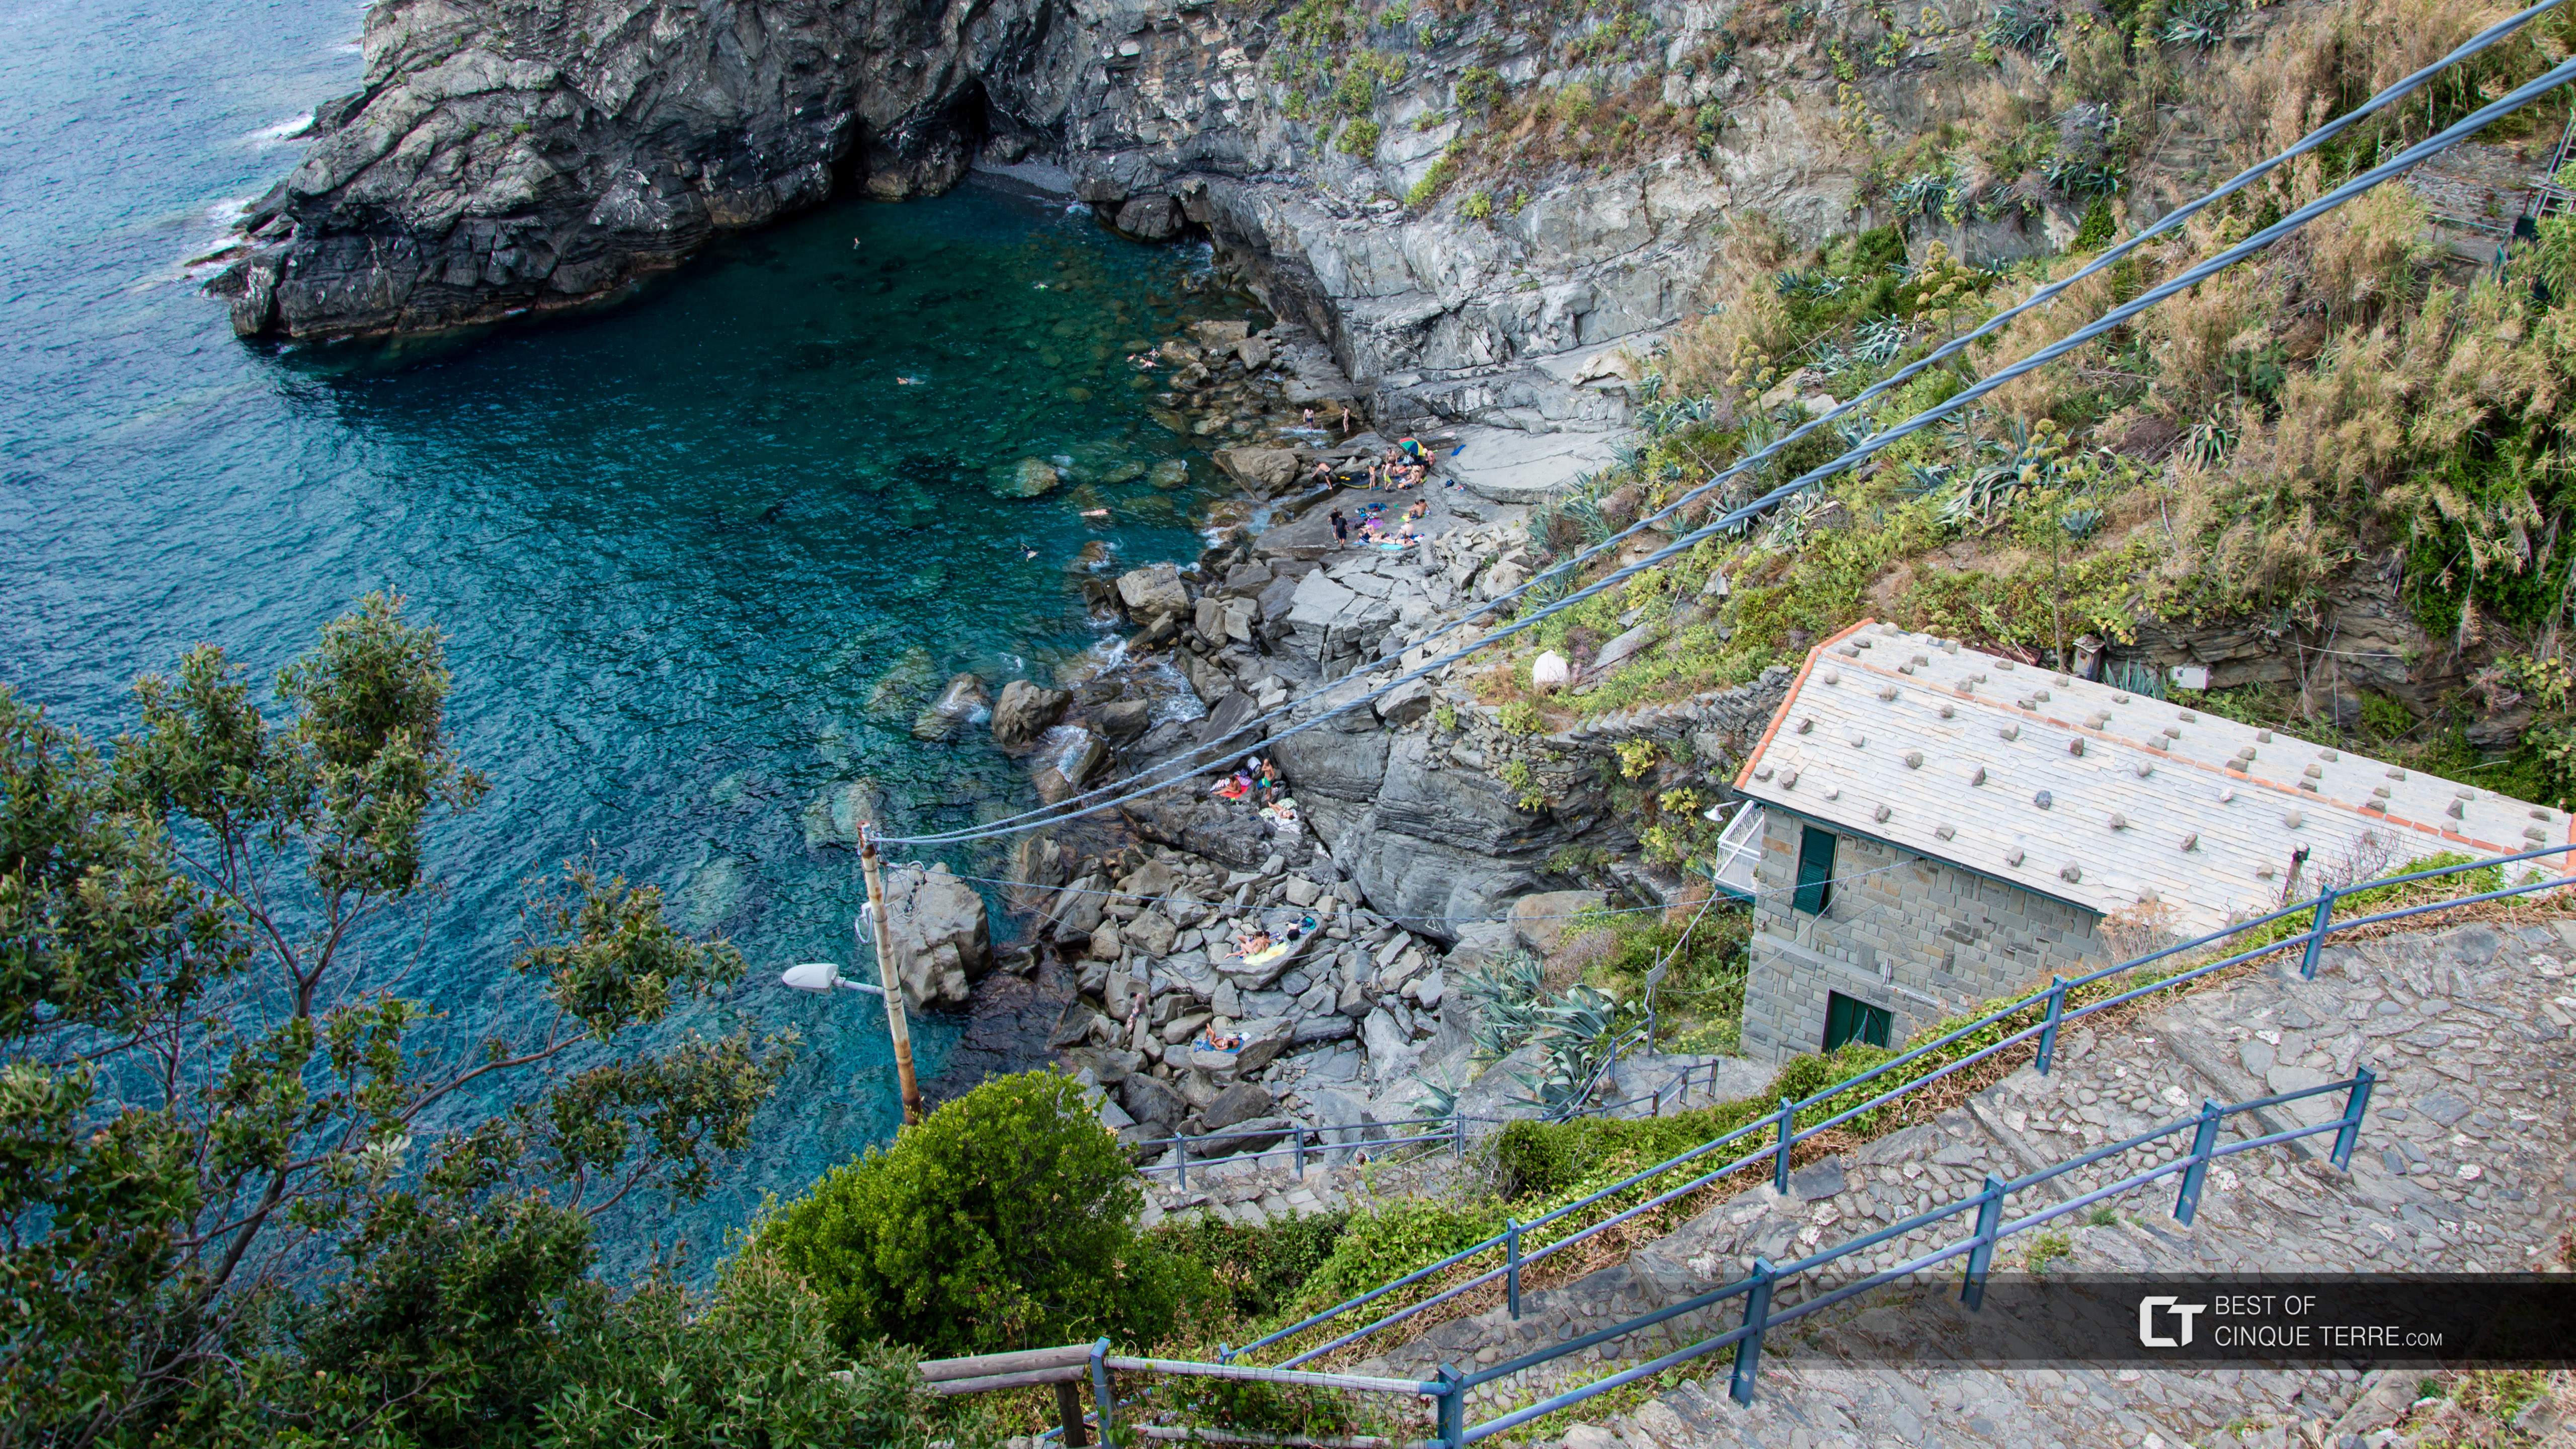 Descida que leva a uma pequena praia, Corniglia, Cinque Terre, Itália